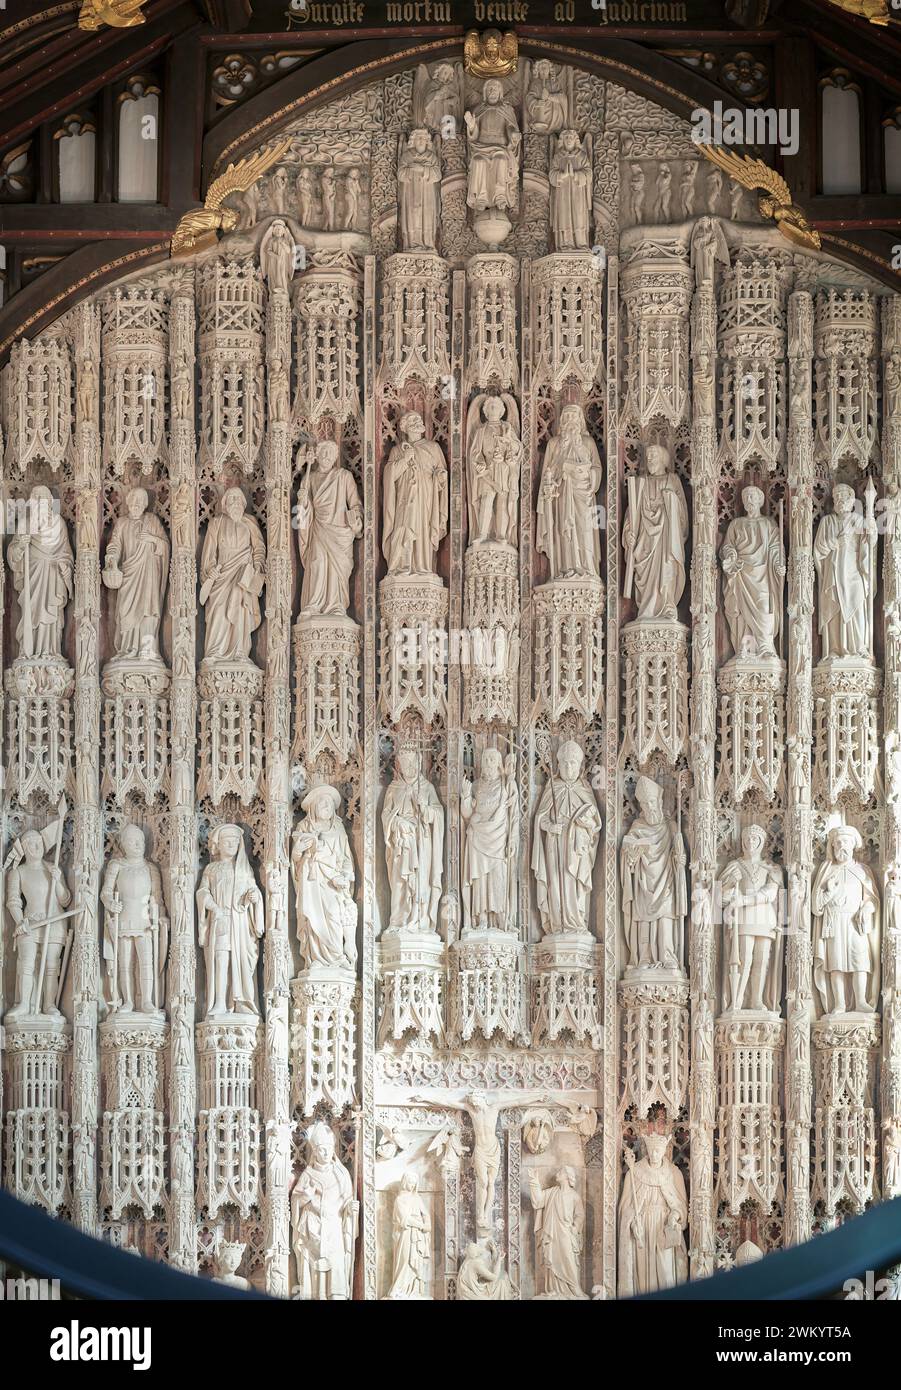 Plafond et redos (des rois, évêques, saints et notables) à la chapelle du All Souls College, Université d'Oxford, Angleterre. Banque D'Images